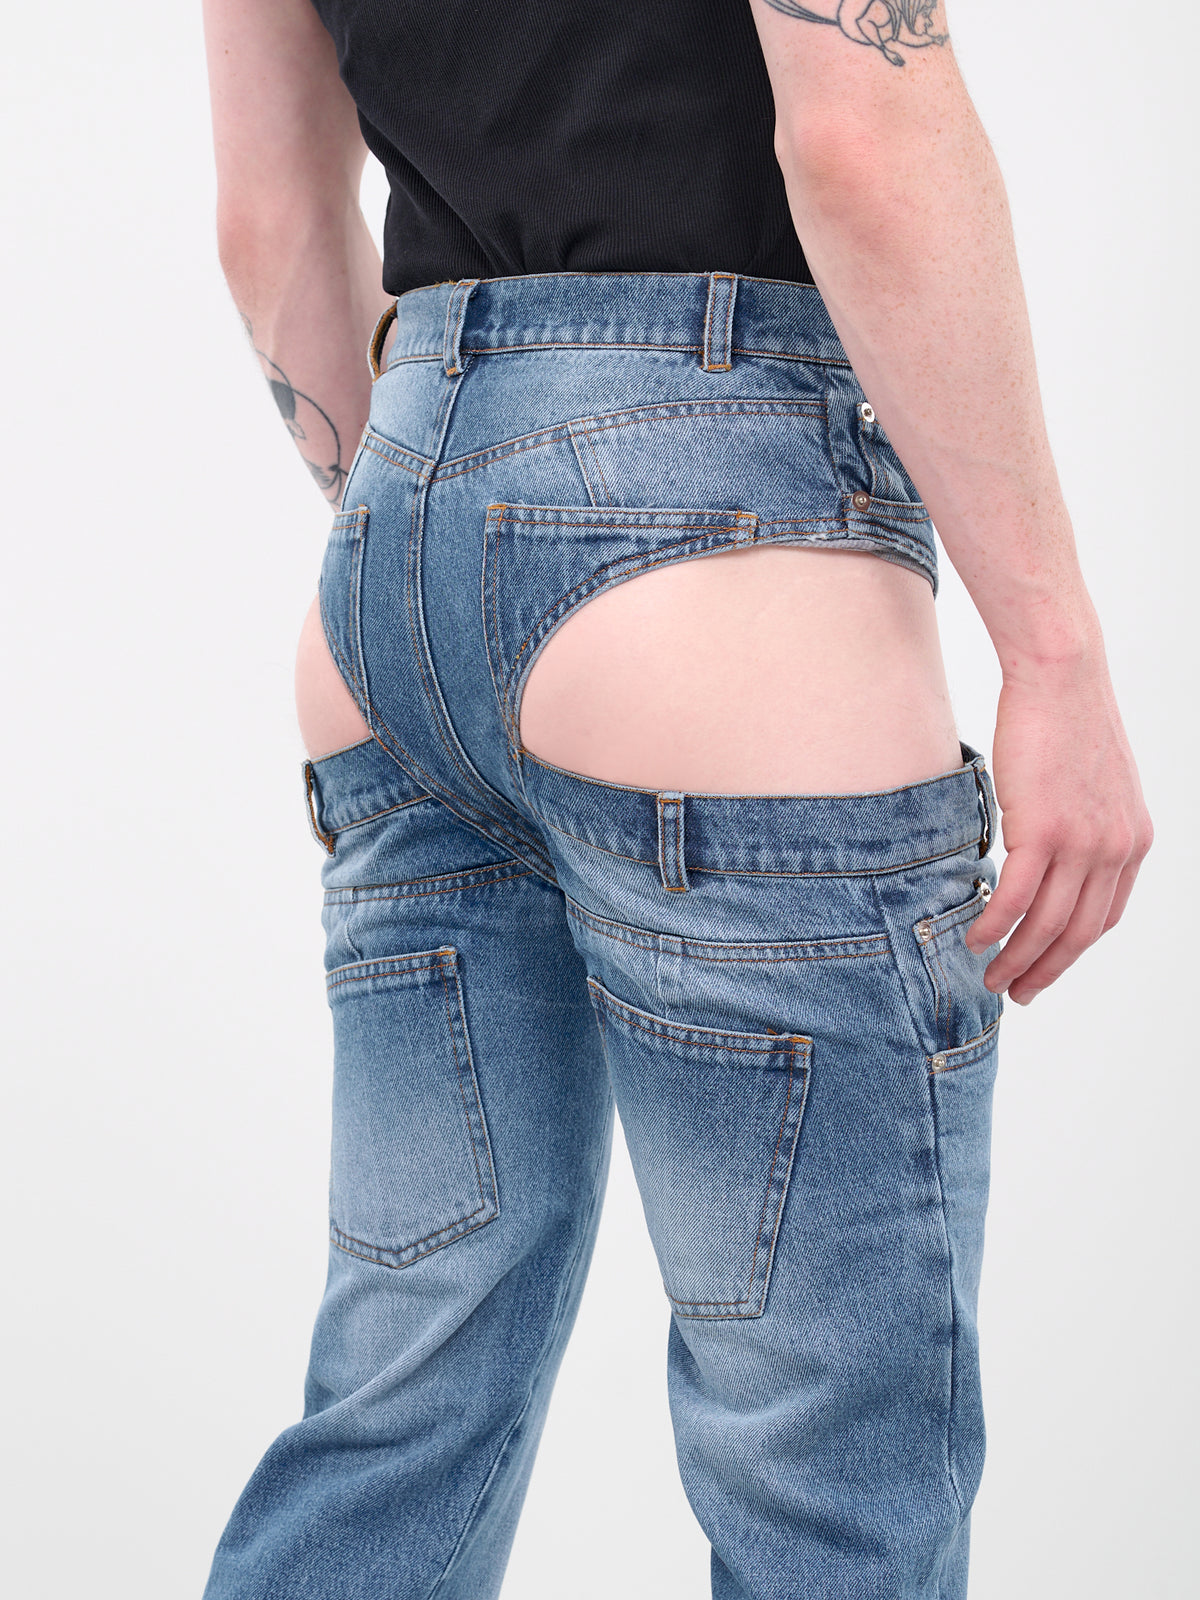 Pantaslip Stonewashed Jeans (DN-004-A-BLUE-STONEWASH)